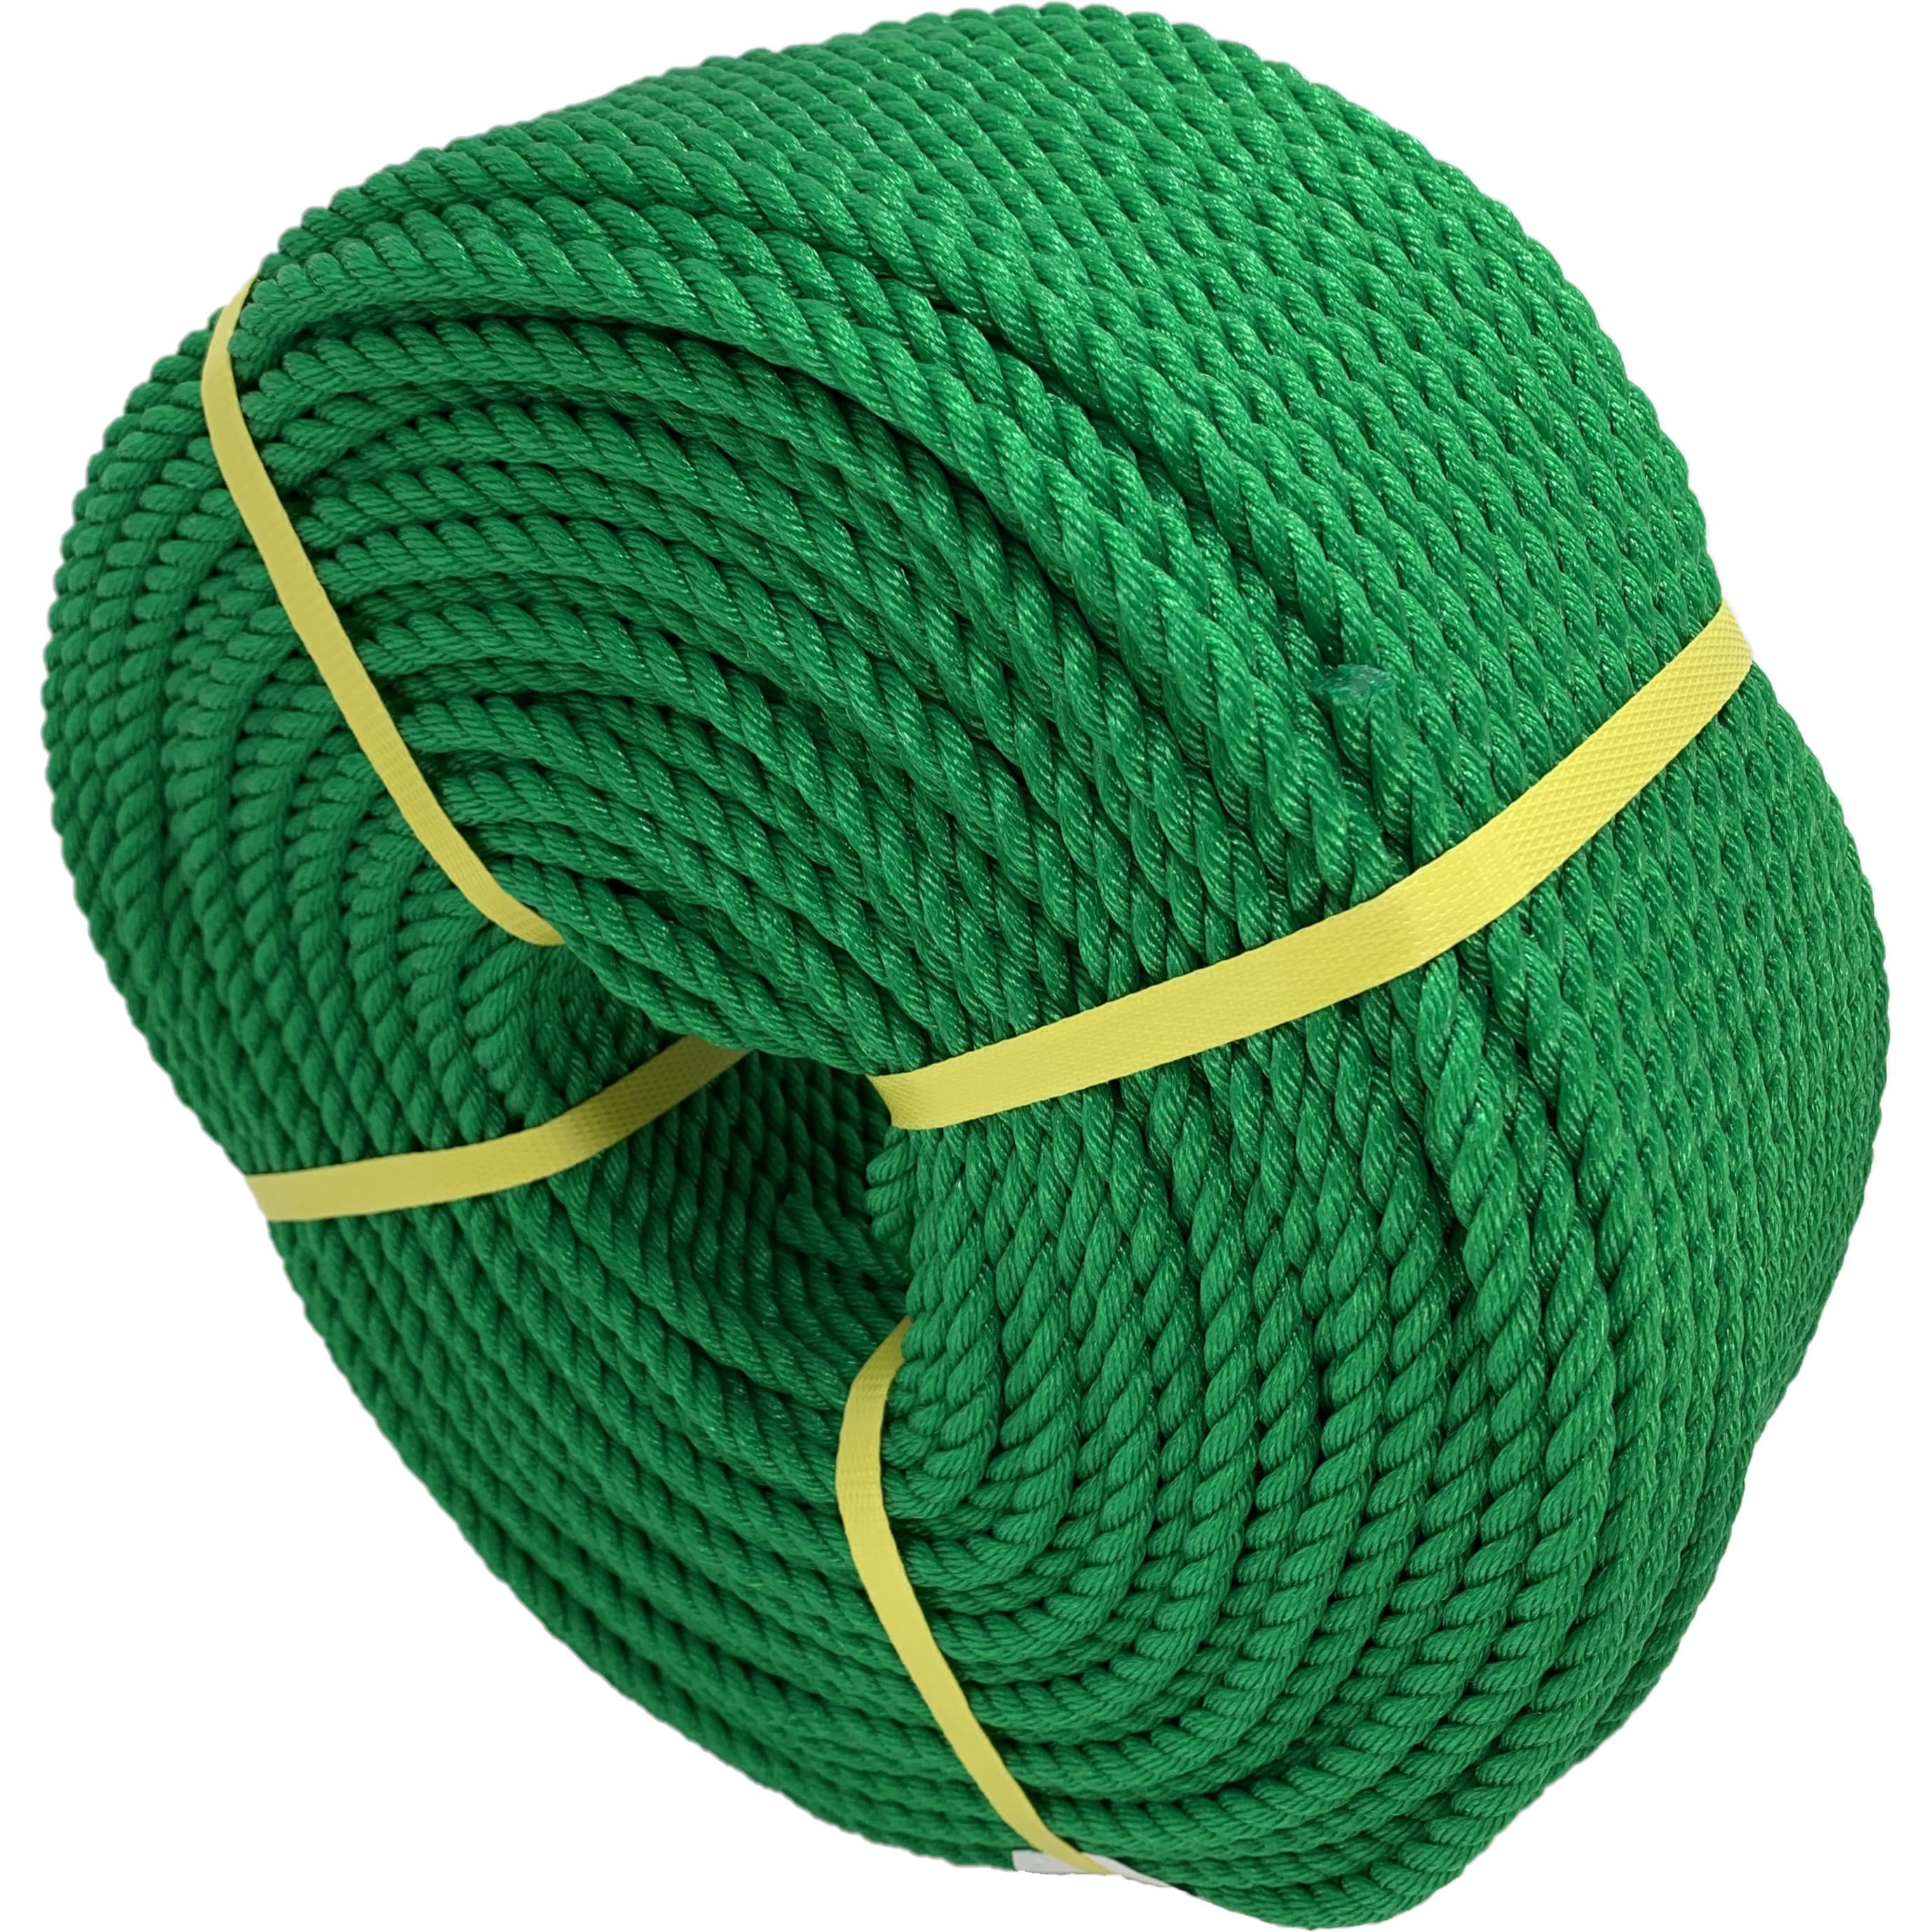 実物 200m定尺 クレモナロープ クレモナSロープ 繊維ロープ 合繊ロープ 14mm×200m 直径14mm 長さ200m 